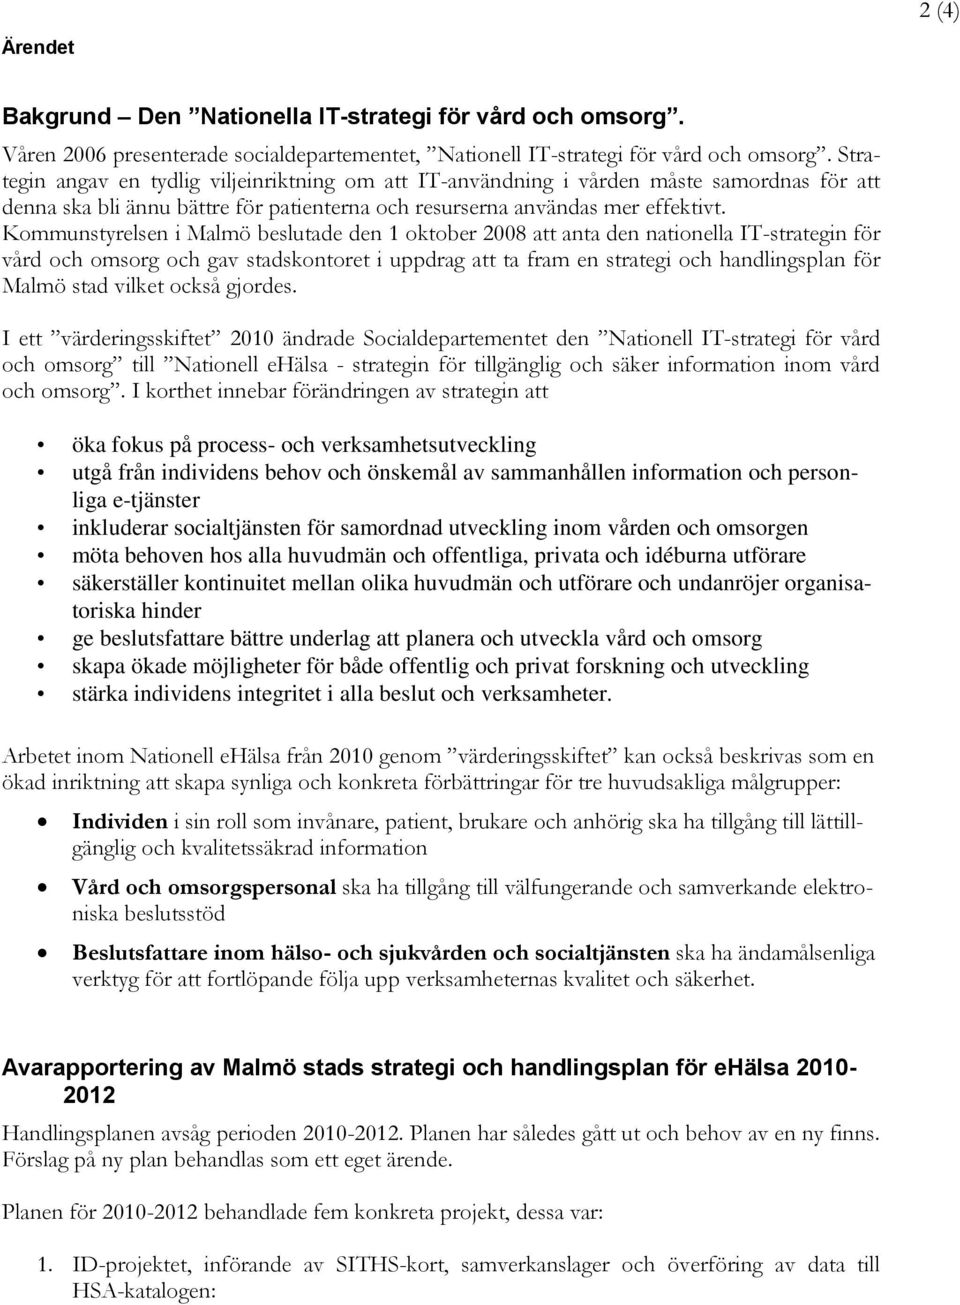 Kommunstyrelsen i Malmö beslutade den 1 oktober 2008 att anta den nationella IT-strategin för vård och omsorg och gav stadskontoret i uppdrag att ta fram en strategi och handlingsplan för Malmö stad